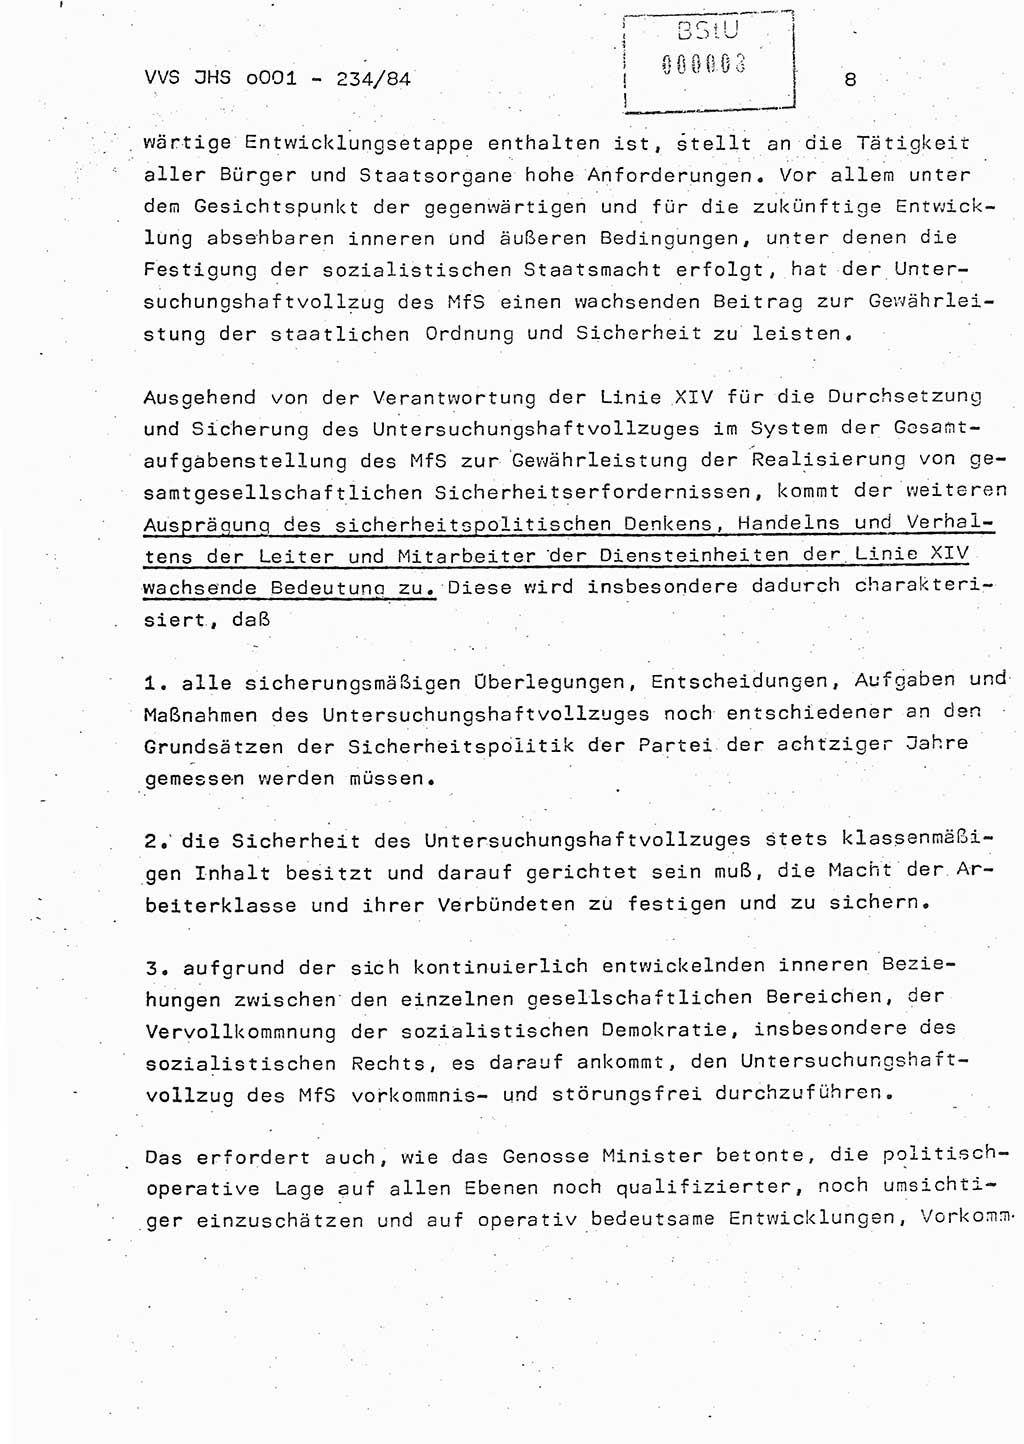 Dissertation Oberst Siegfried Rataizick (Abt. ⅩⅣ), Oberstleutnant Volkmar Heinz (Abt. ⅩⅣ), Oberstleutnant Werner Stein (HA Ⅸ), Hauptmann Heinz Conrad (JHS), Ministerium für Staatssicherheit (MfS) [Deutsche Demokratische Republik (DDR)], Juristische Hochschule (JHS), Vertrauliche Verschlußsache (VVS) o001-234/84, Potsdam 1984, Seite 8 (Diss. MfS DDR JHS VVS o001-234/84 1984, S. 8)